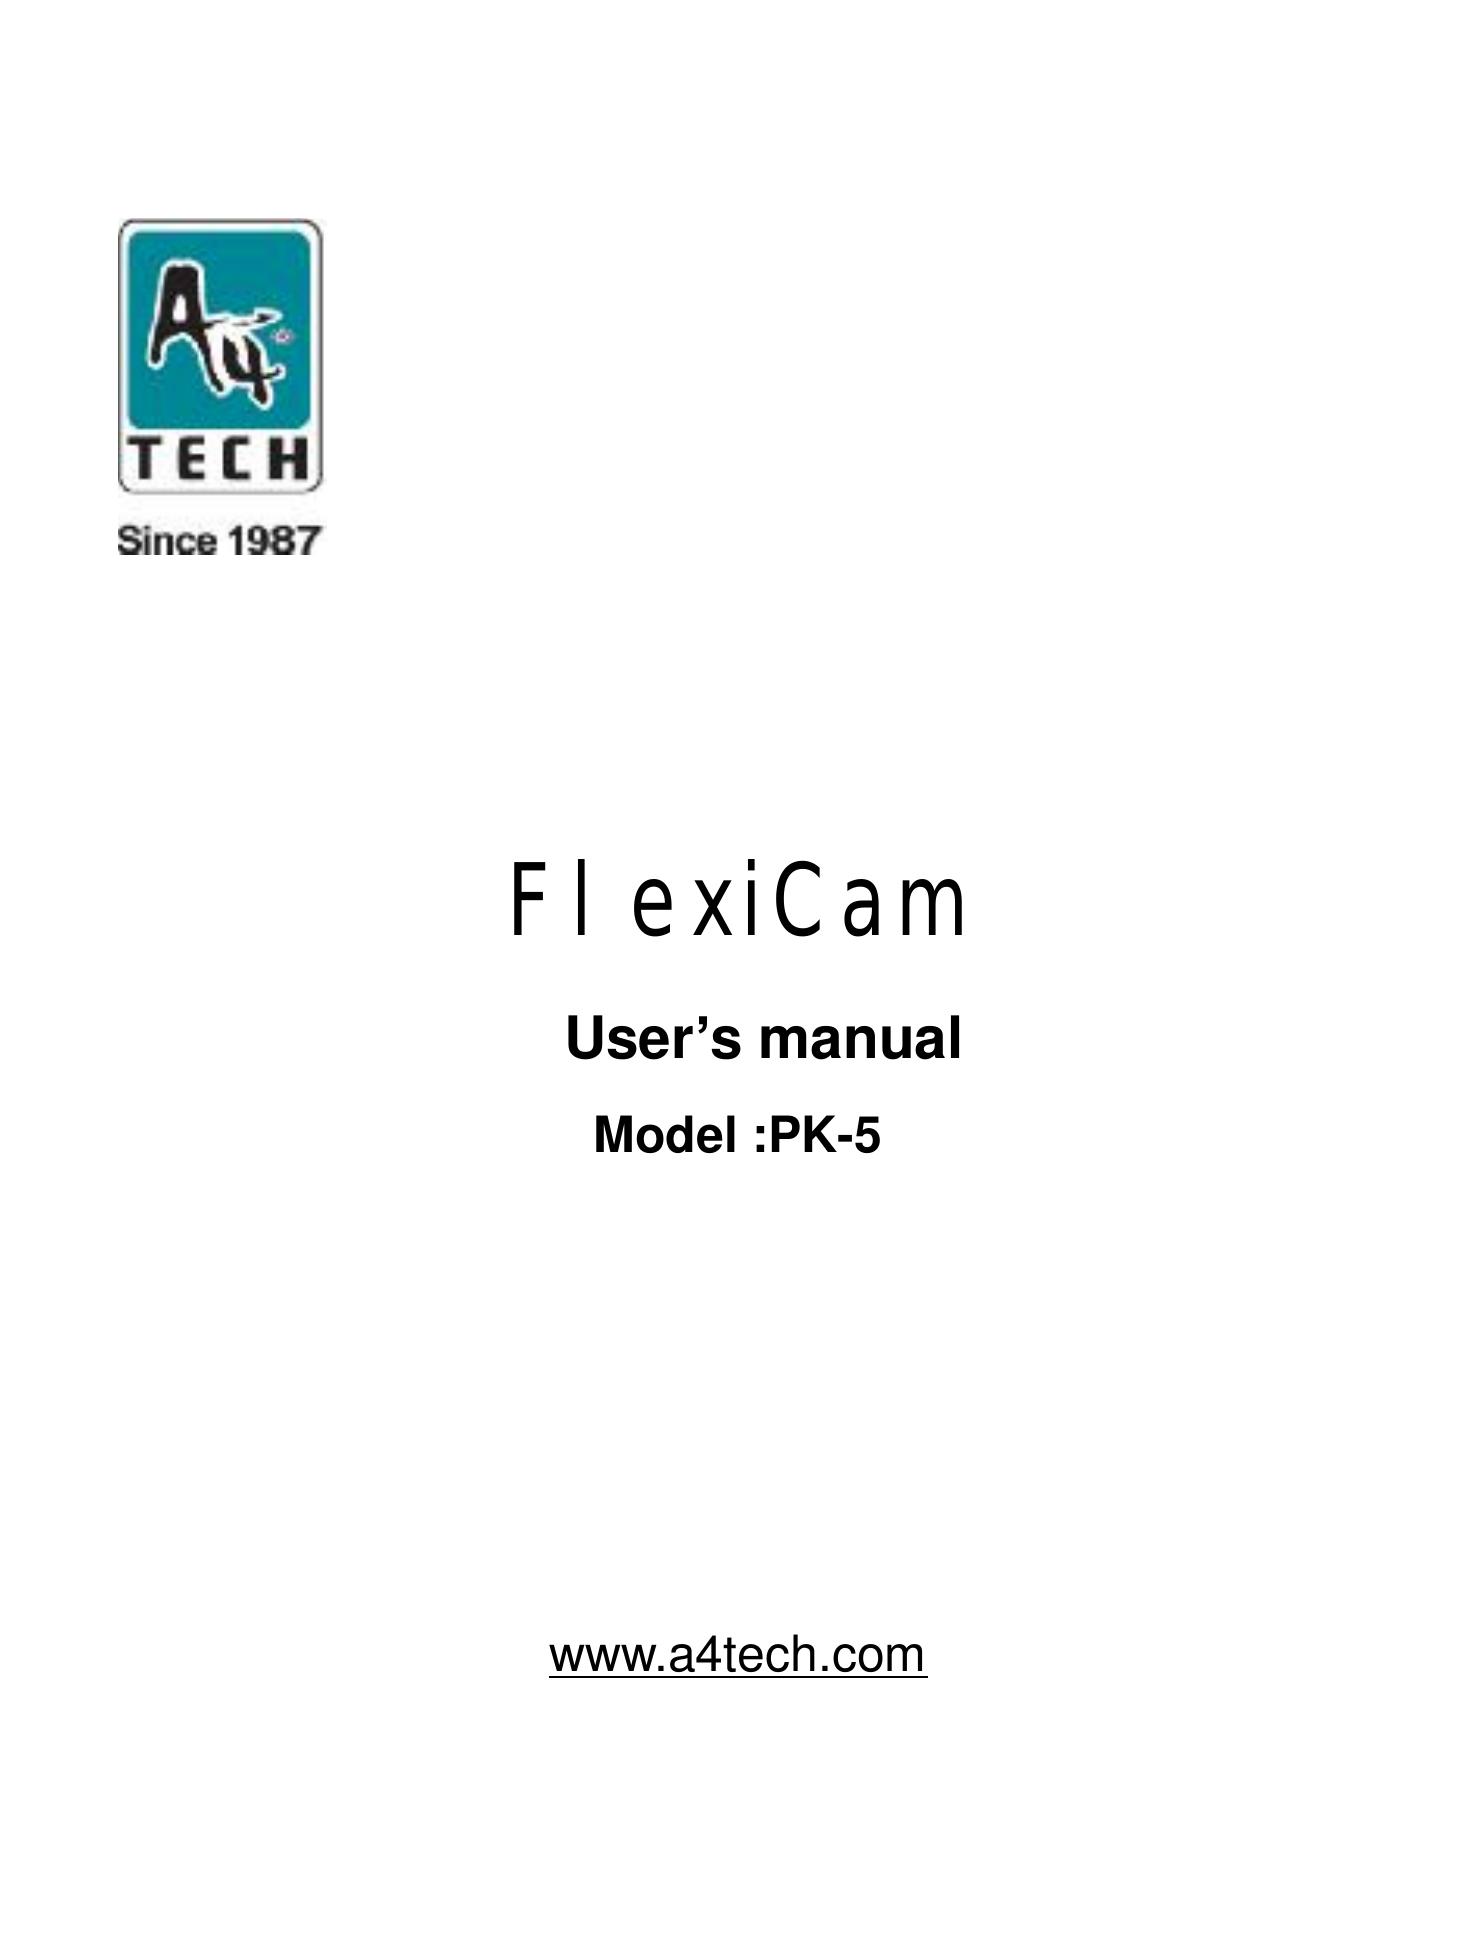 A4 Tech. PK-5 Digital Camera User Manual